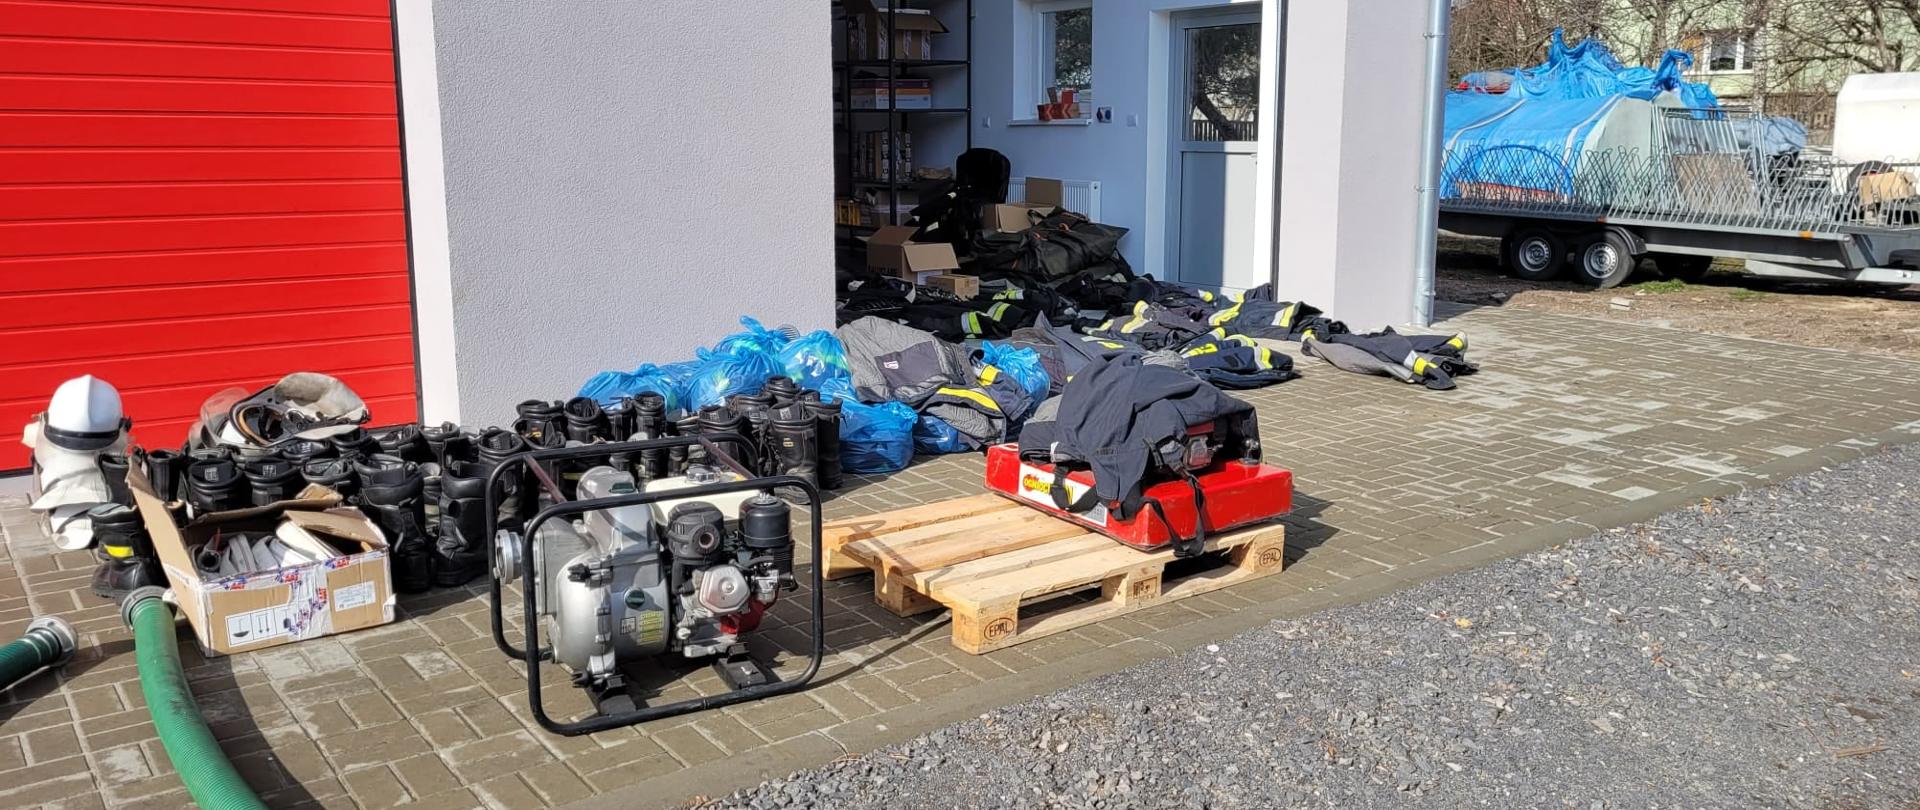 Zdjęcie przedstawia sprzęt przekazany z jednostek Ochotniczych Straży Pożarnych z terenu powiatu lwóweckiego w ramach pomocy dla Ukrainy.